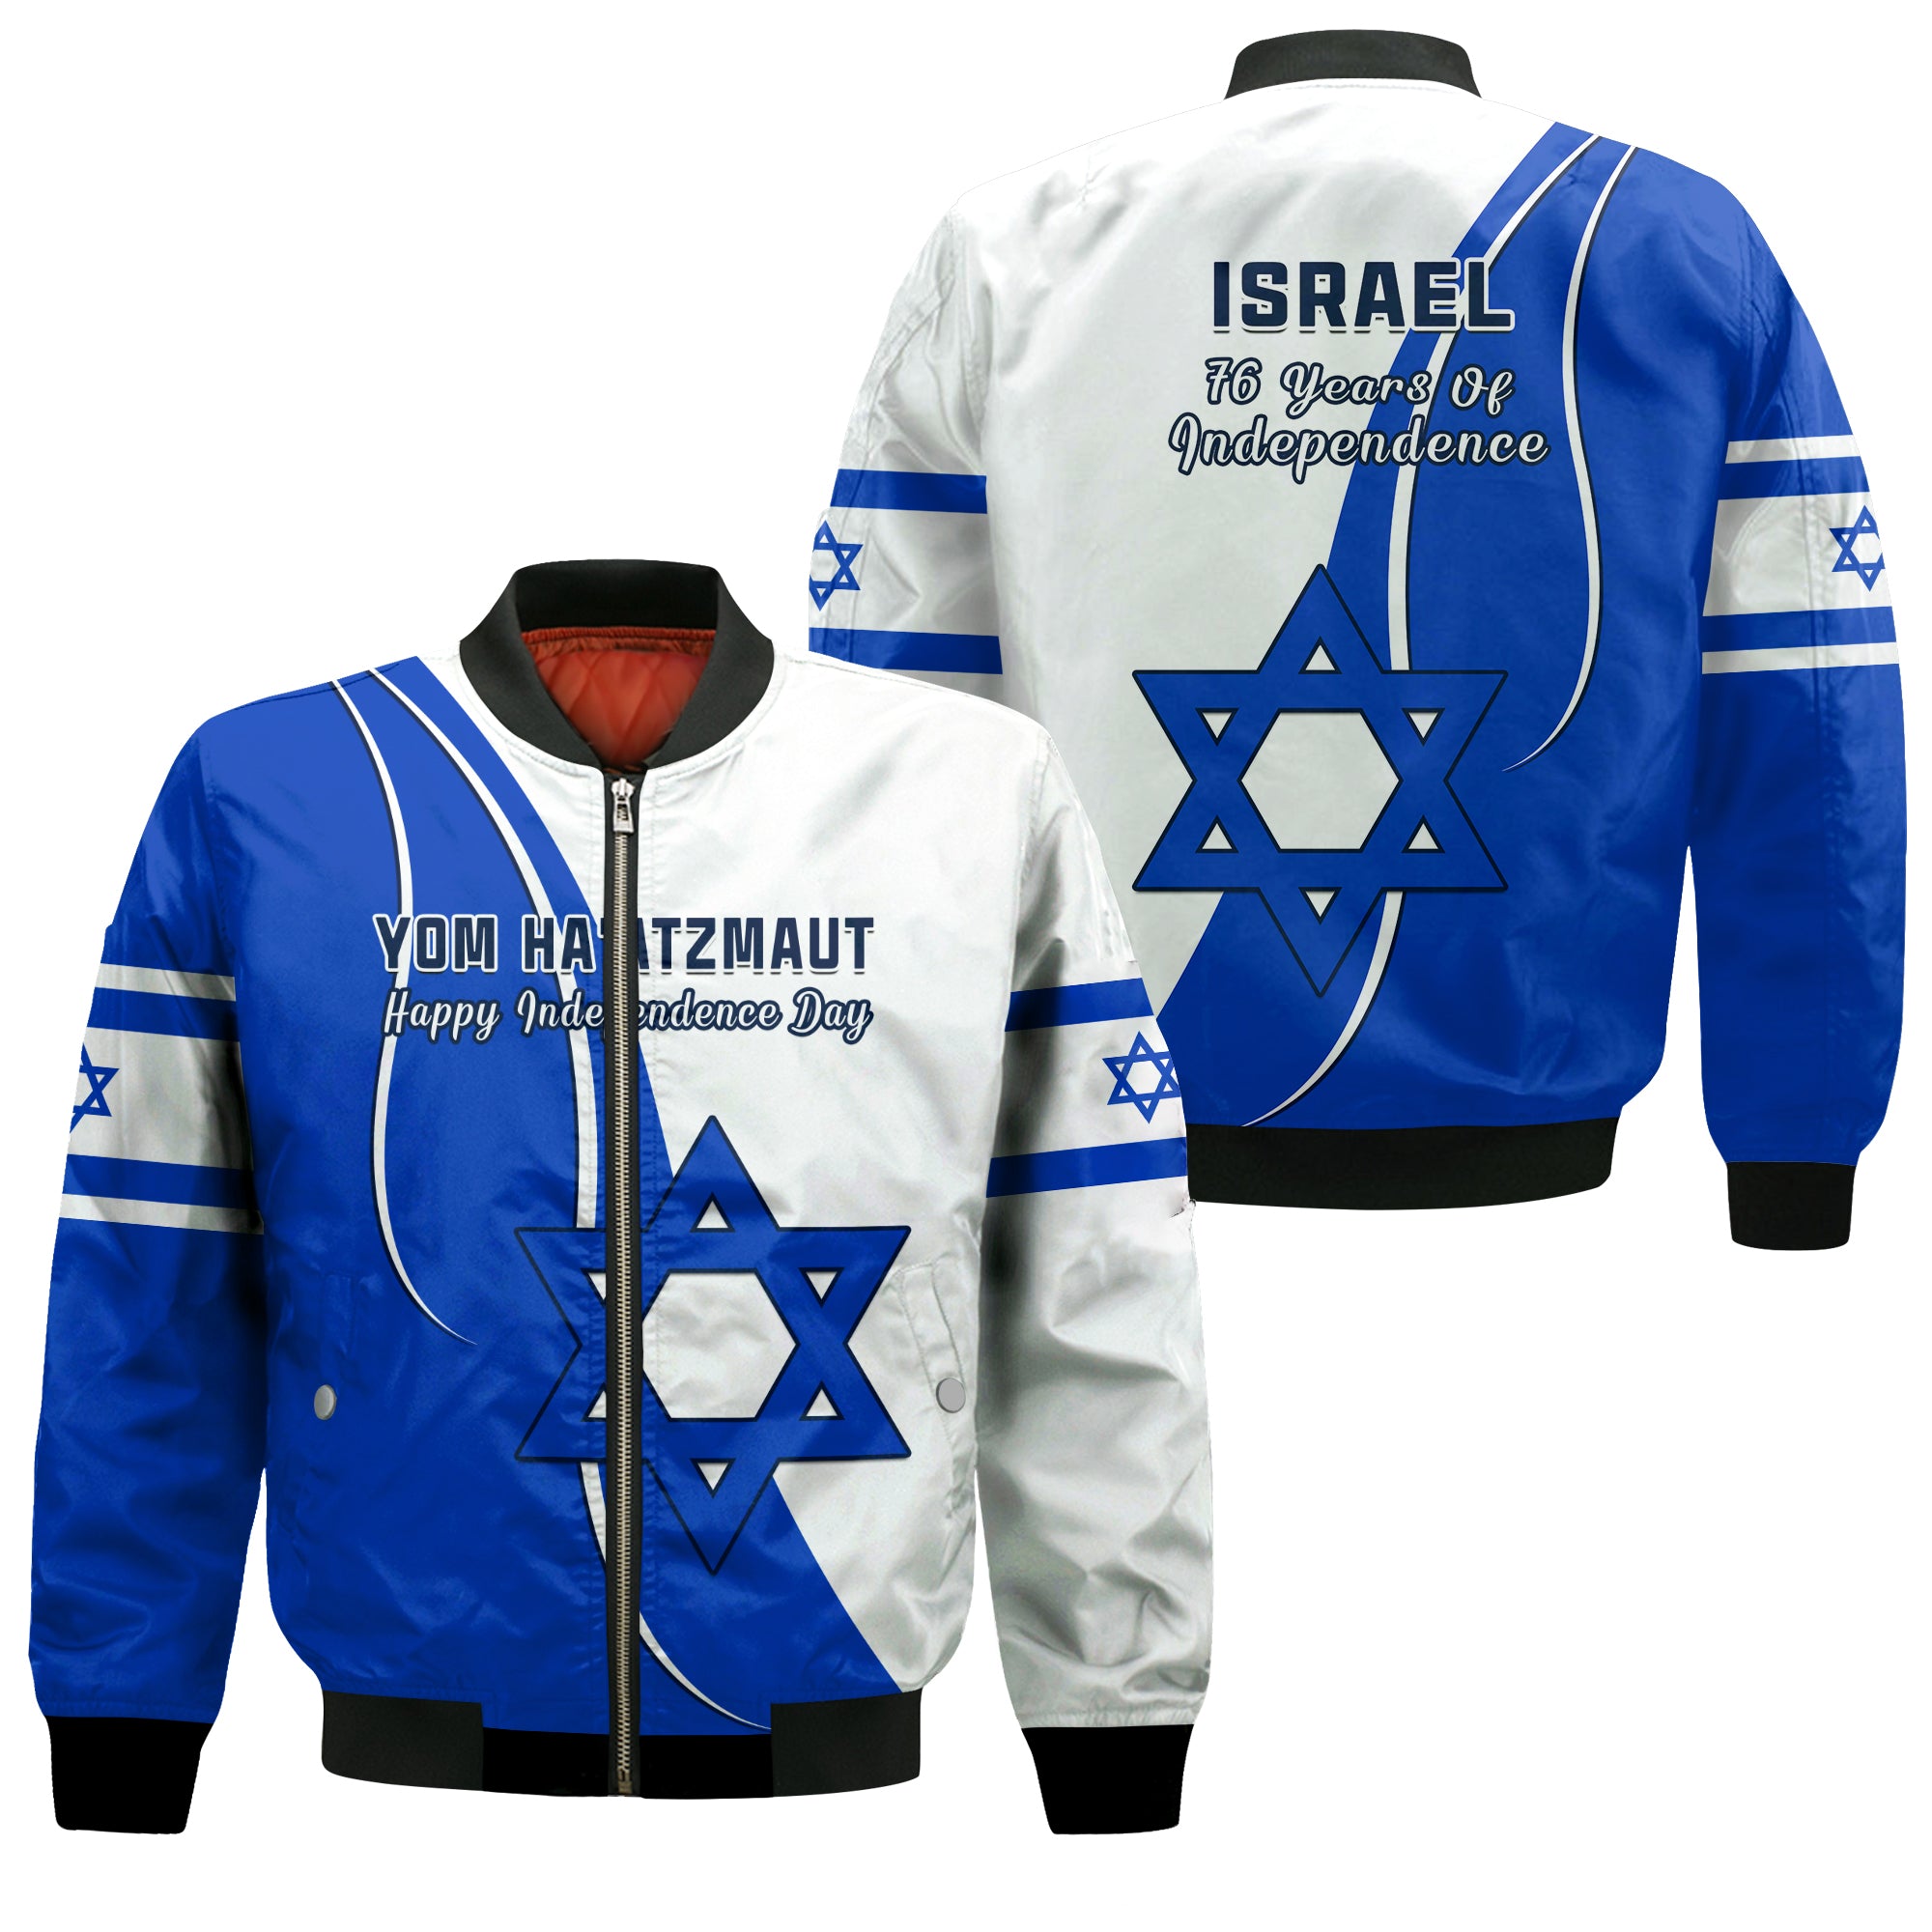 Israel Independence Day Bomber Jacket Yom Haatzmaut Curvel Style LT14